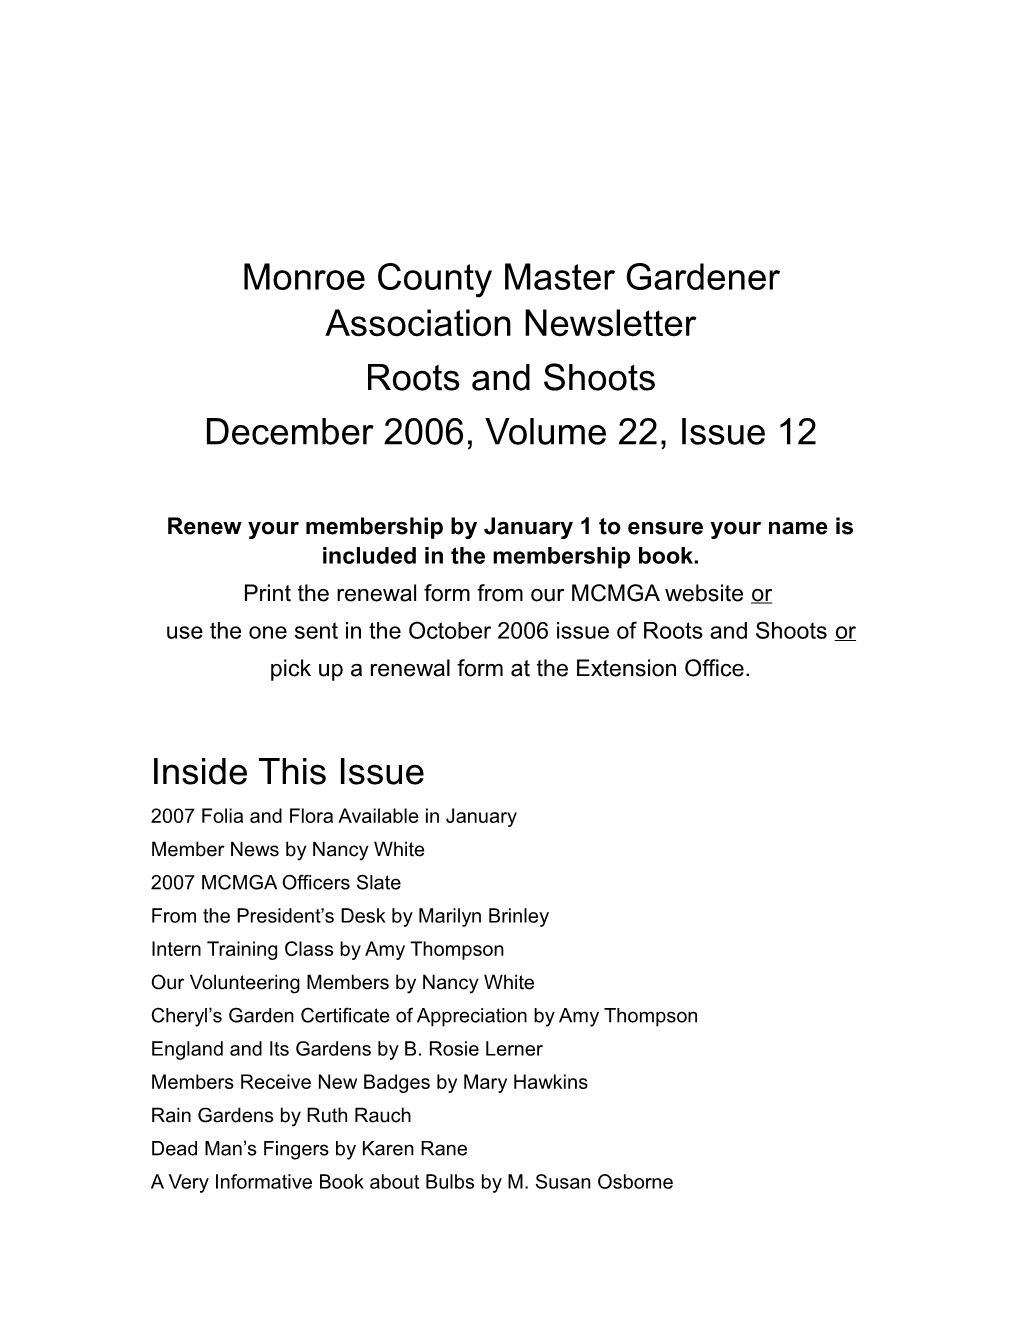 Monroe County Master Gardener Association Newsletter s1